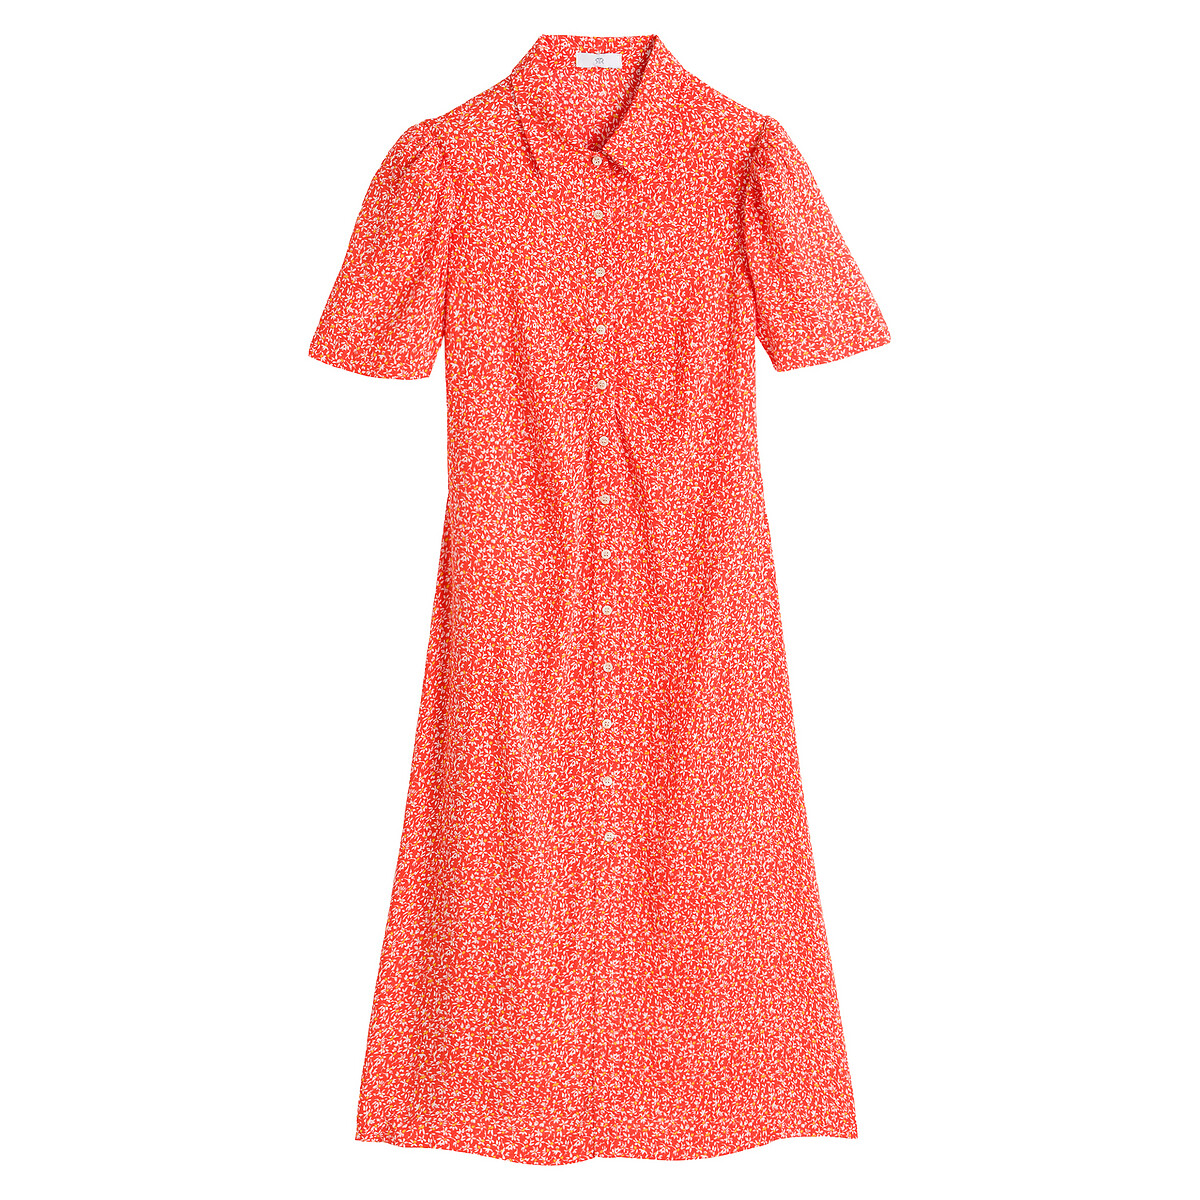 Платье-рубашка LaRedoute С короткими рукавами и цветочным рисунком 36 (FR) - 42 (RUS) красный, размер 36 (FR) - 42 (RUS) С короткими рукавами и цветочным рисунком 36 (FR) - 42 (RUS) красный - фото 5